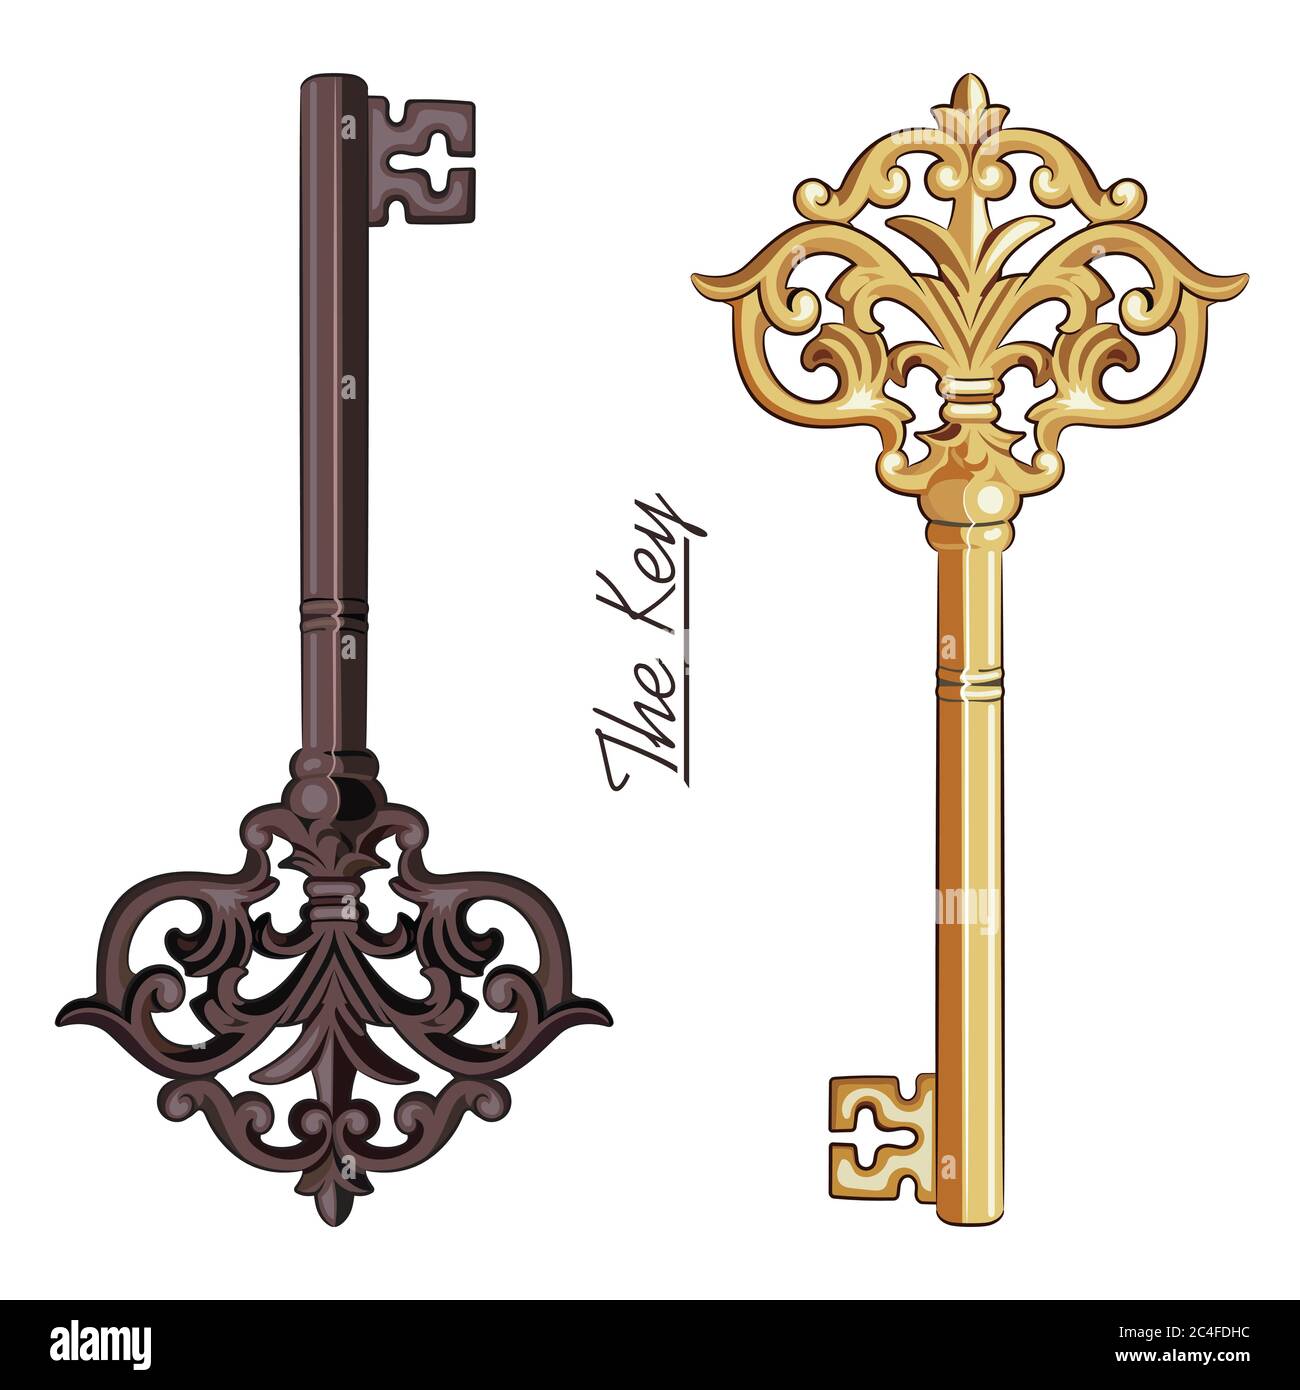 Chiavi d'epoca medievali ornamentali con rotoli di foglie vittoriane, chiavi antiche disegnate a mano Illustrazione Vettoriale